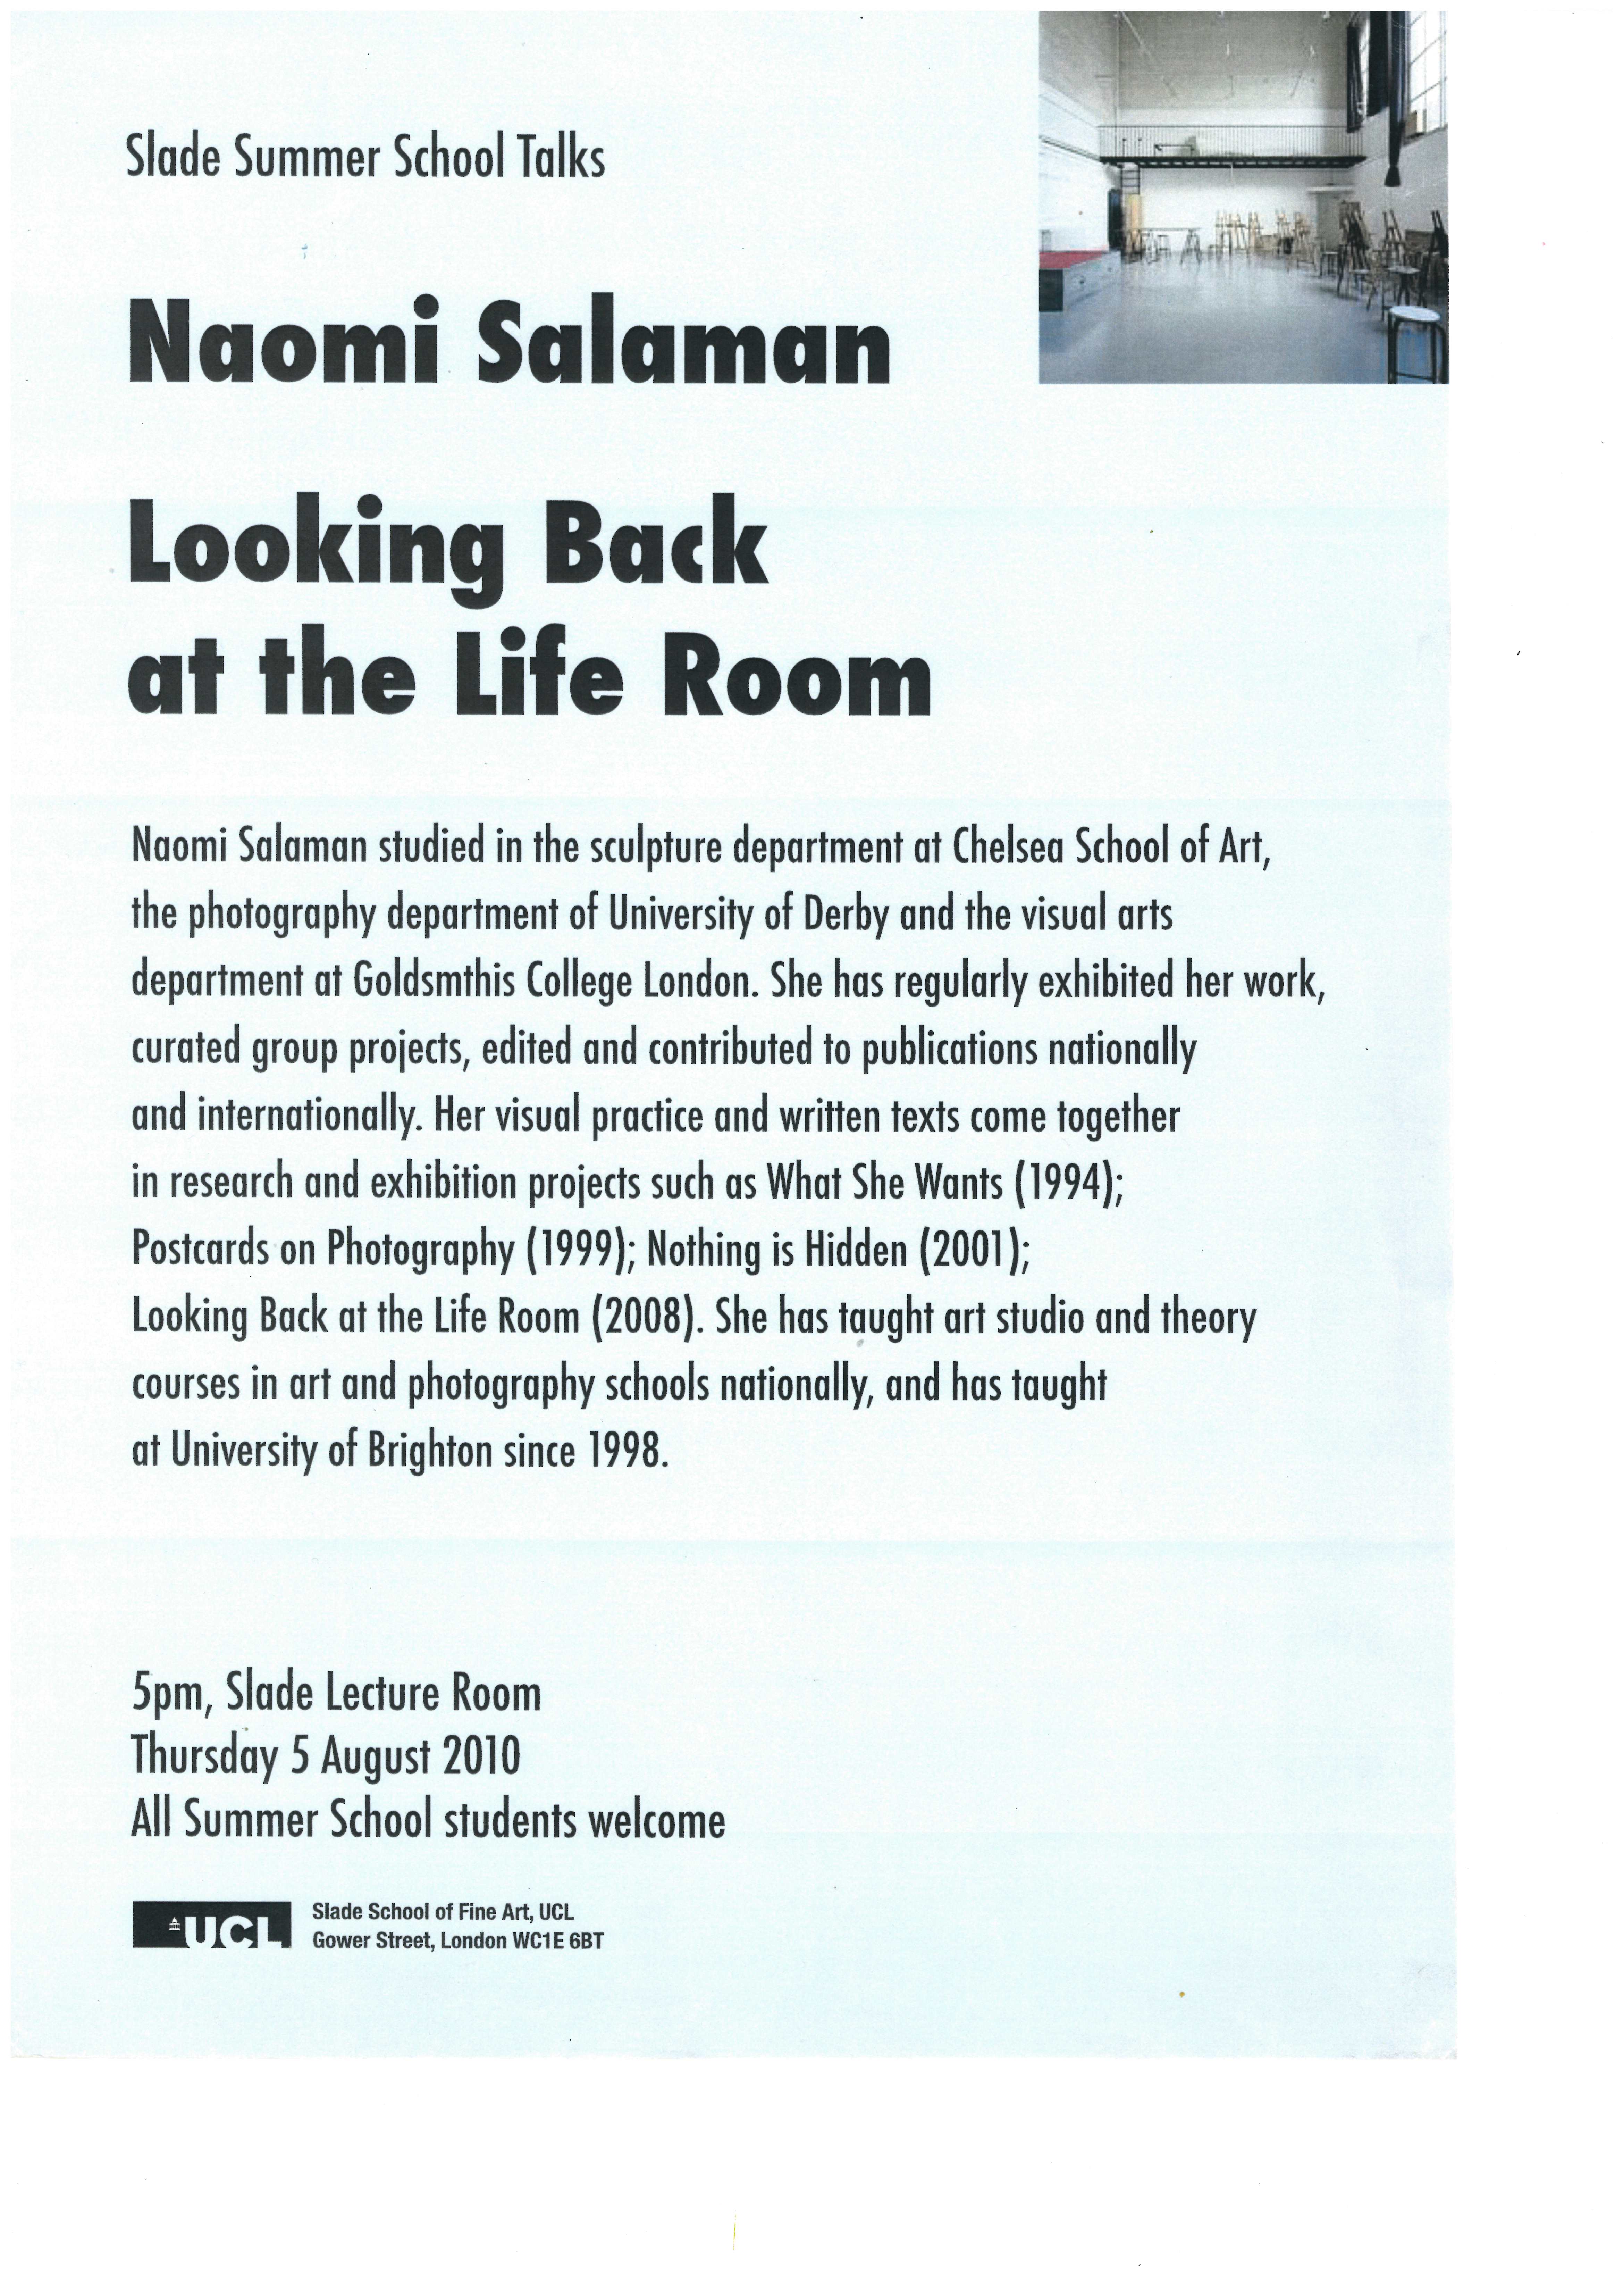  Naomi Salaman, Looking back at the Life Room